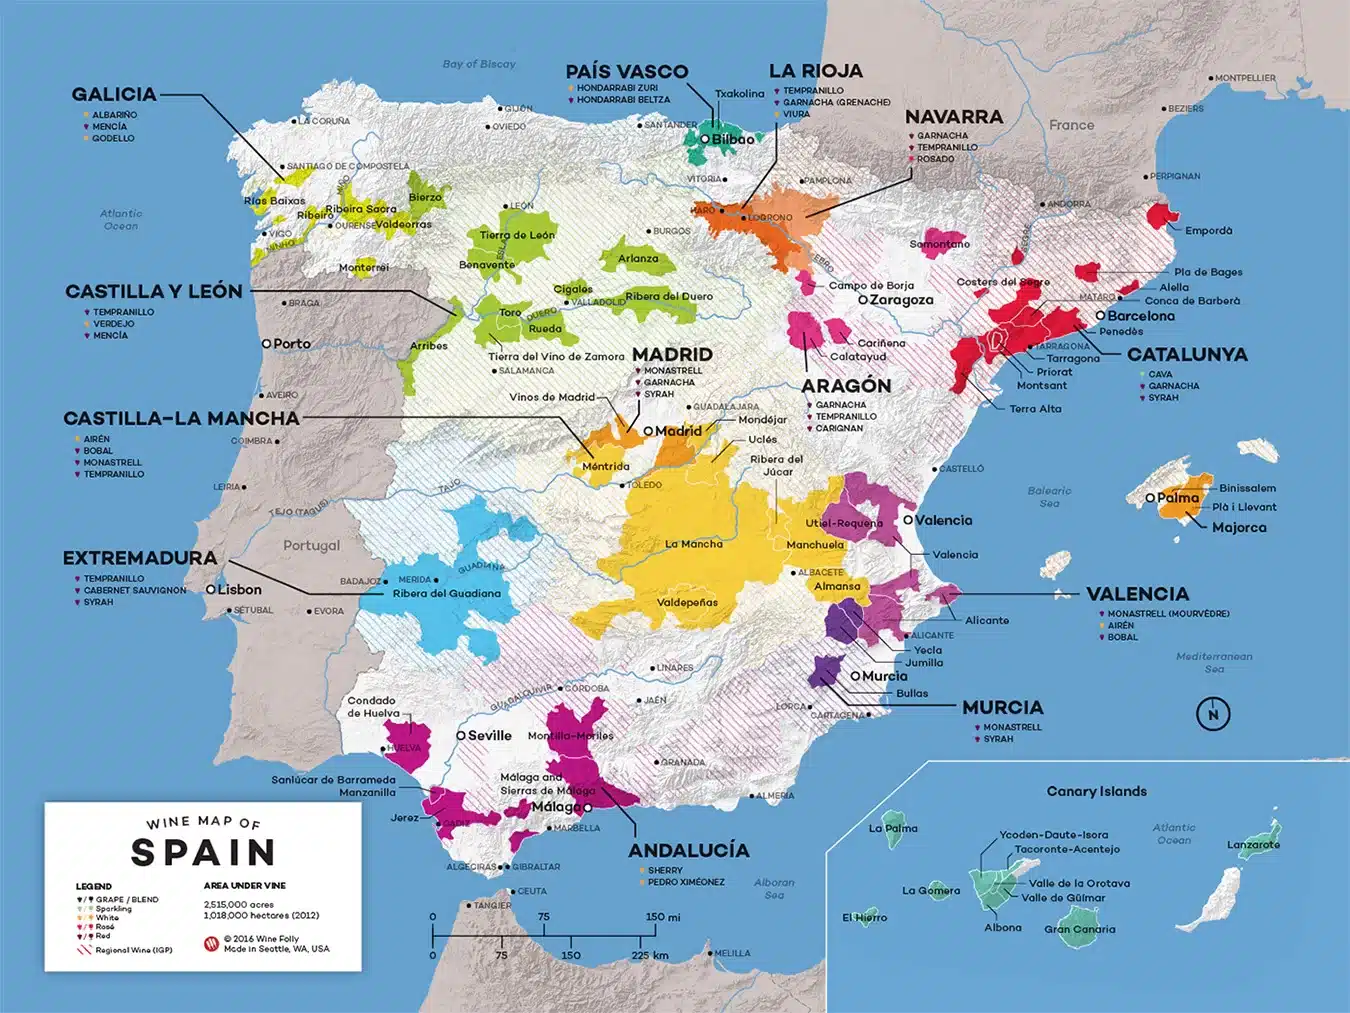 Spain-Wine-Map, og Pais Vasco